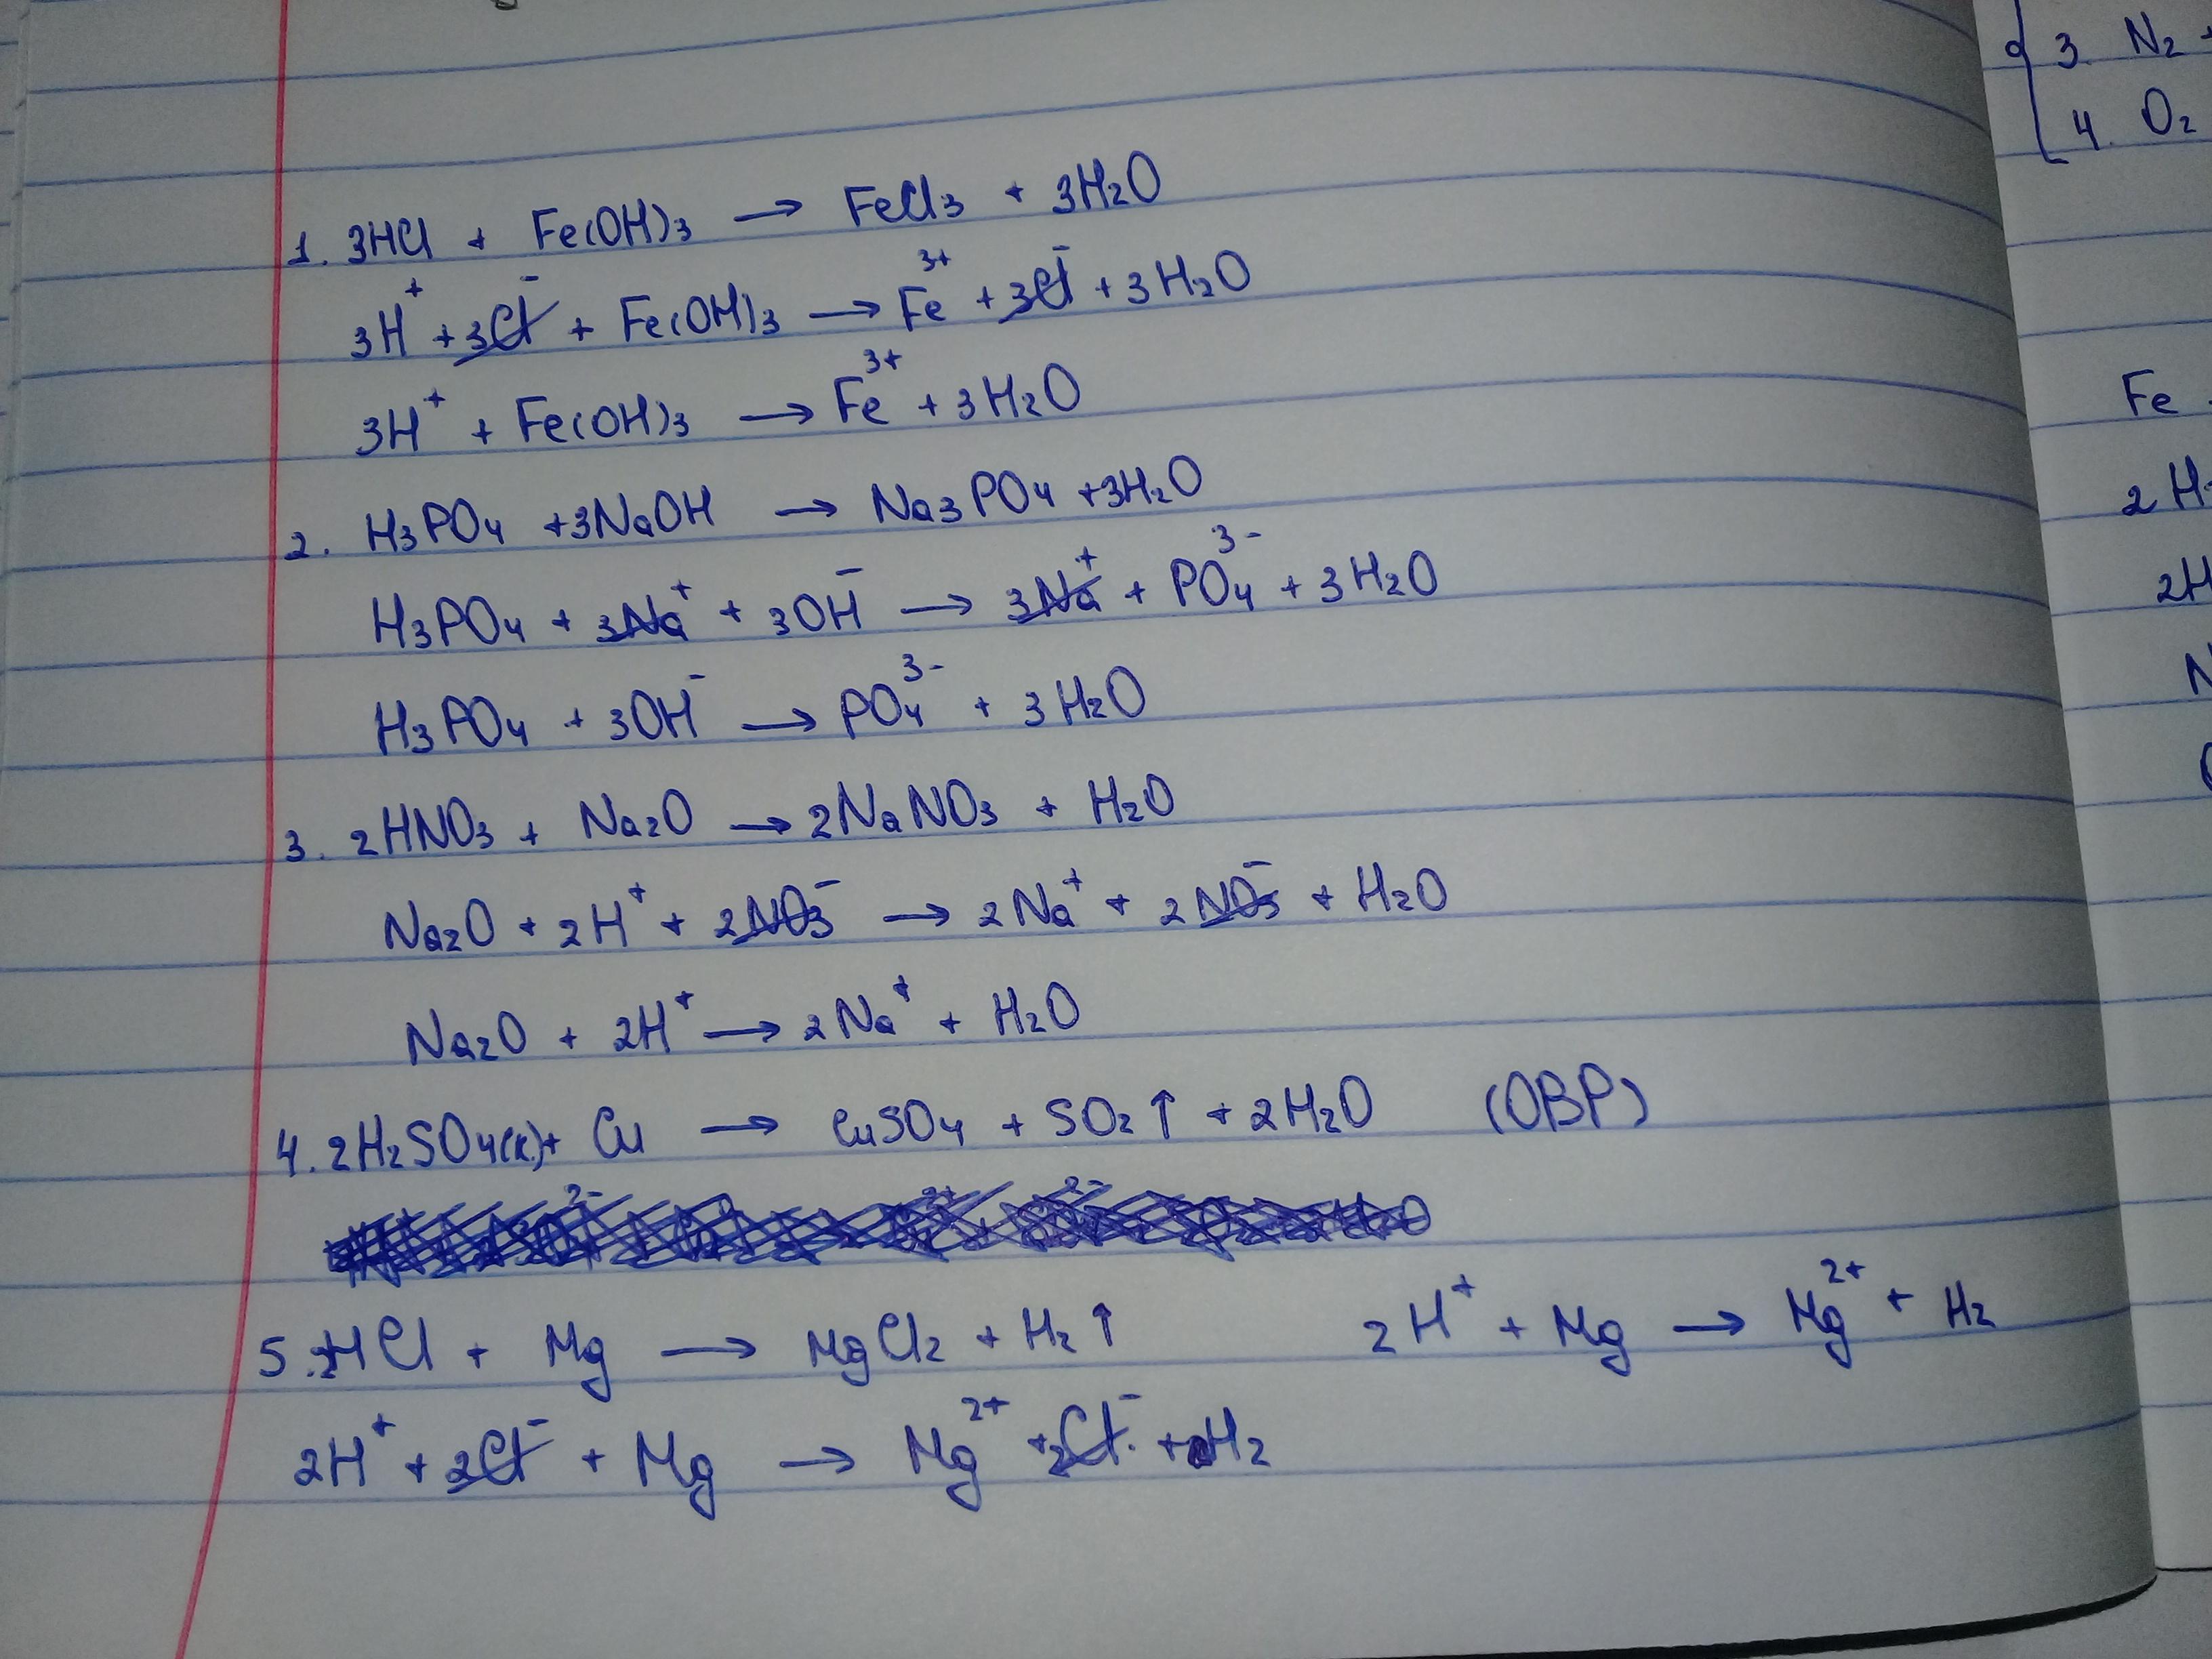 Kno3 h2so4 cu. Fe Oh 3 h2so4 ионное уравнение. Fe Oh 2 h2so4 закончить уравнение реакции. Уравнения возможных реакций h3po4. Закончить уравнения реакций al2o3+HCL.